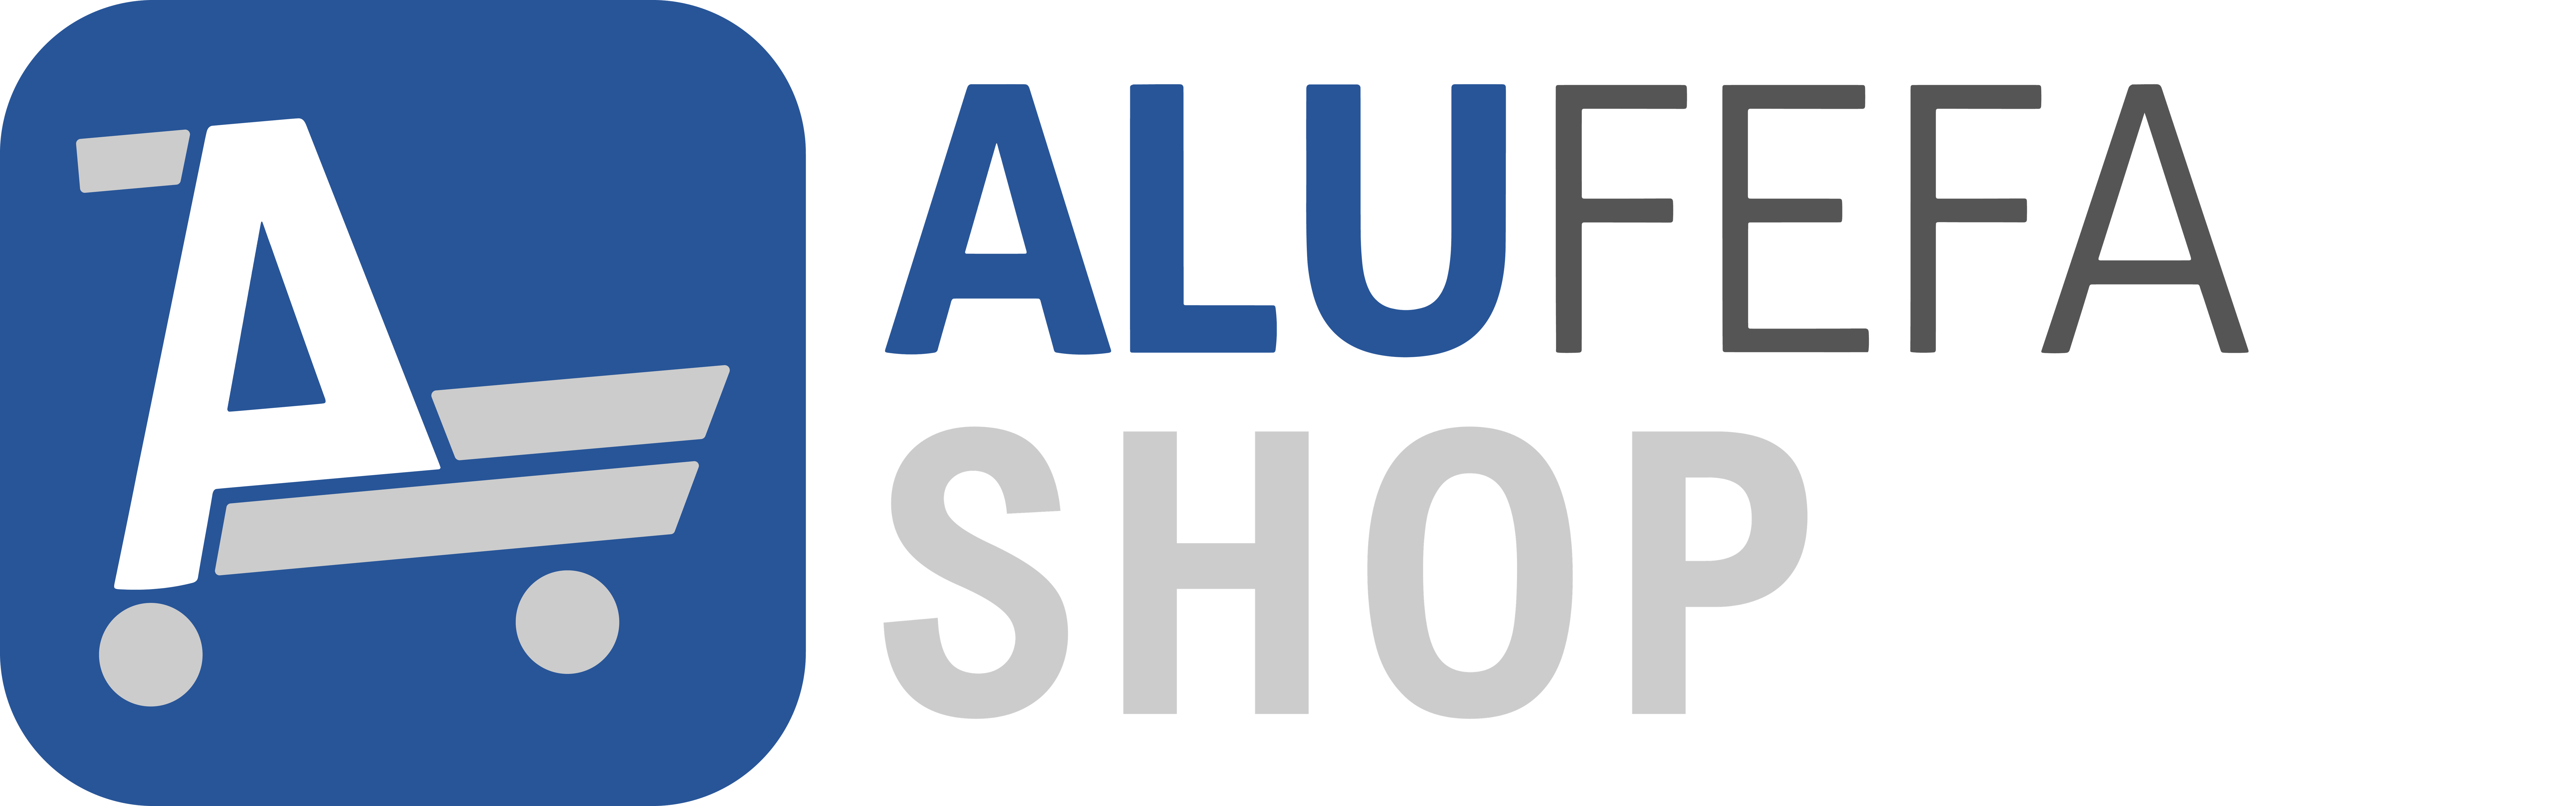 ALUFEFA Shop Logo